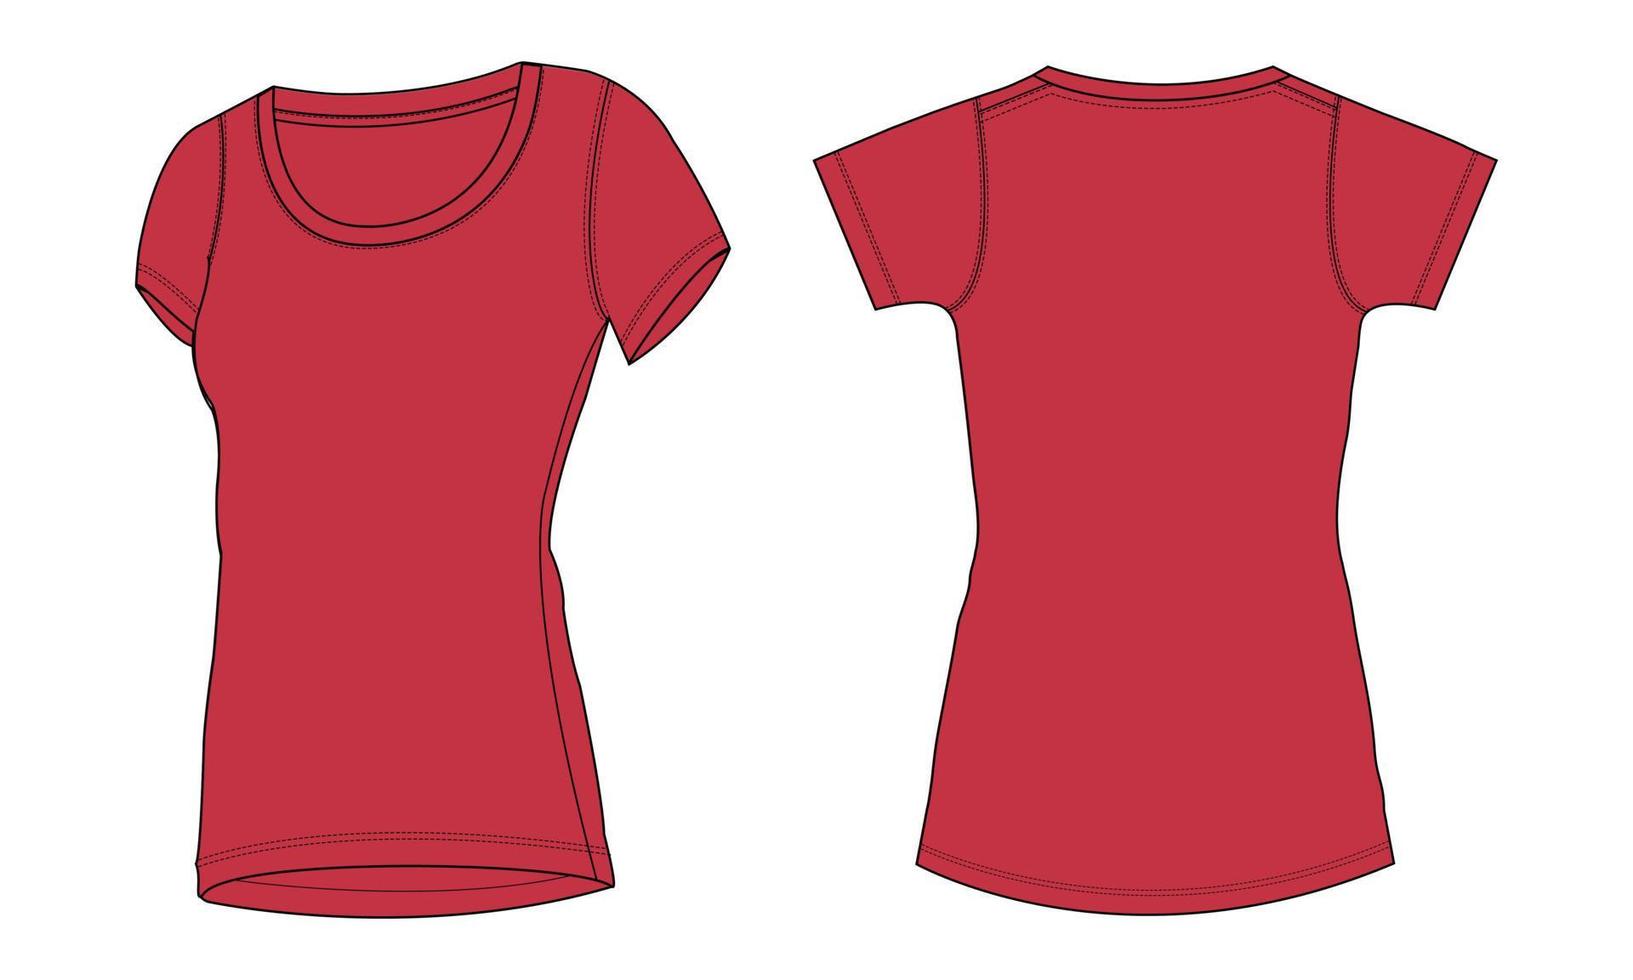 kurzärmliges slim fit t-shirt technische mode flache skizze vektorillustration rote farbvorlage für damen vektor